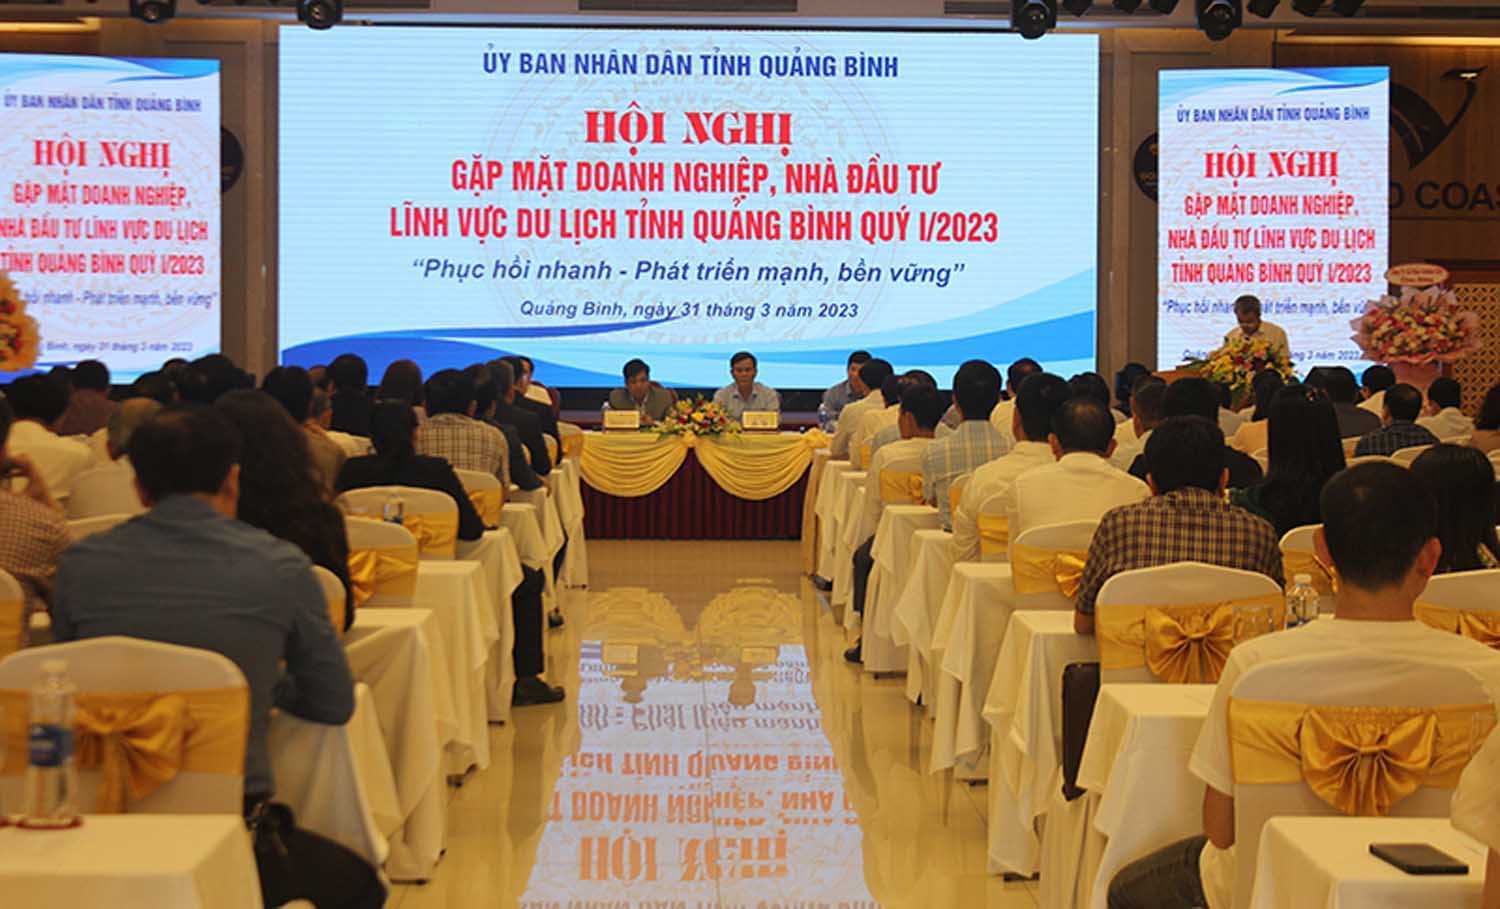 Hội nghị bàn về giải pháp phát triển du lịch nói chung và du lịch MICE nói riêng tại Quảng Bình.